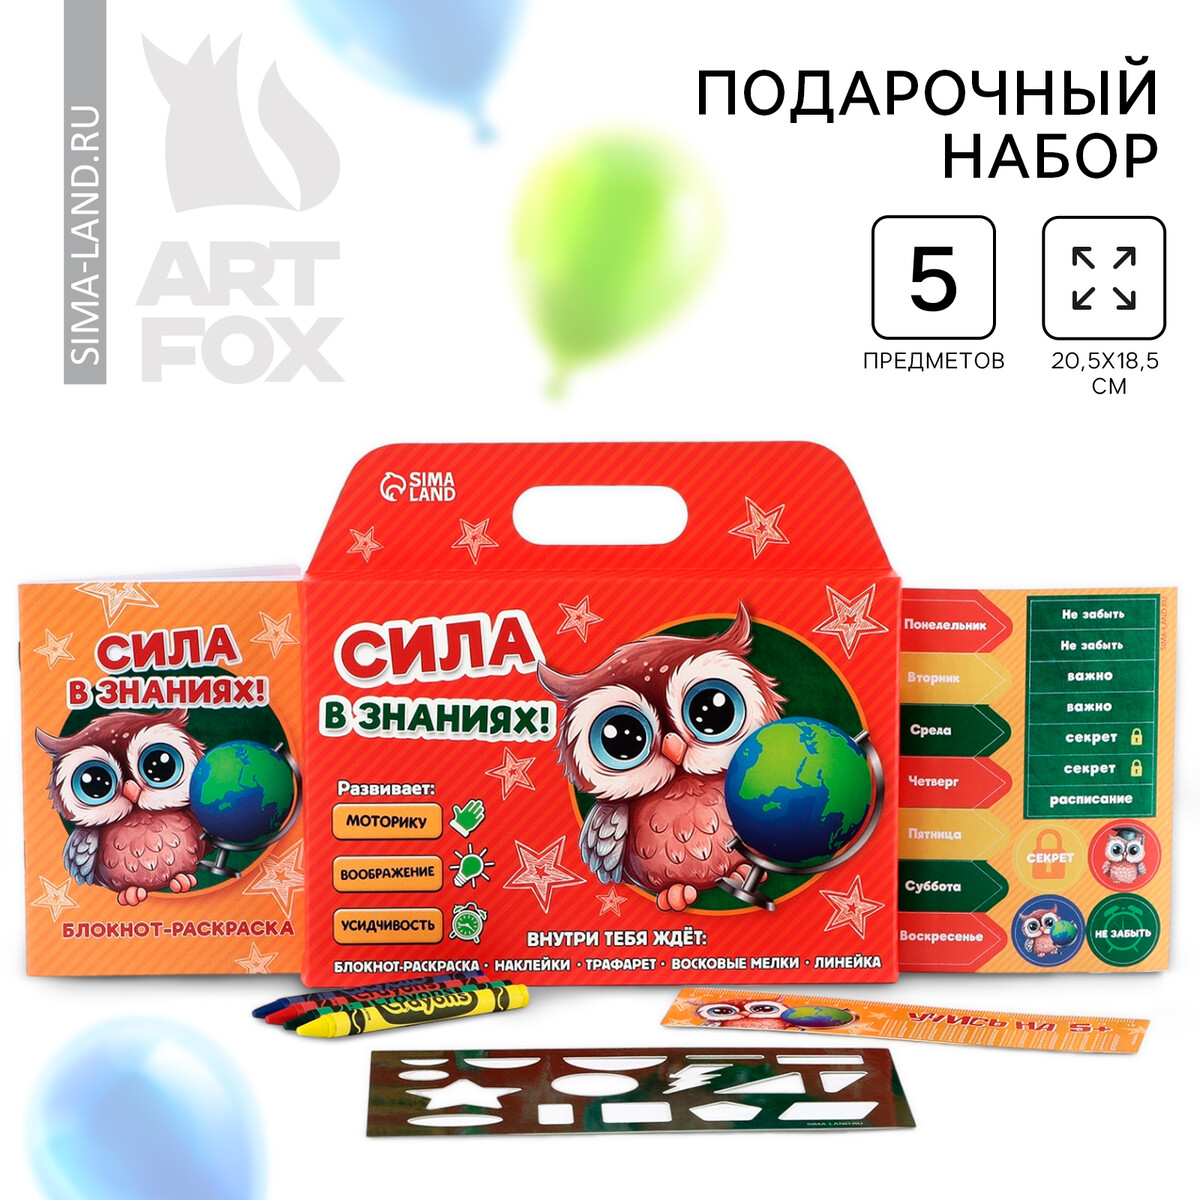 Подарочный набор на выпускной 5 предметов ArtFox